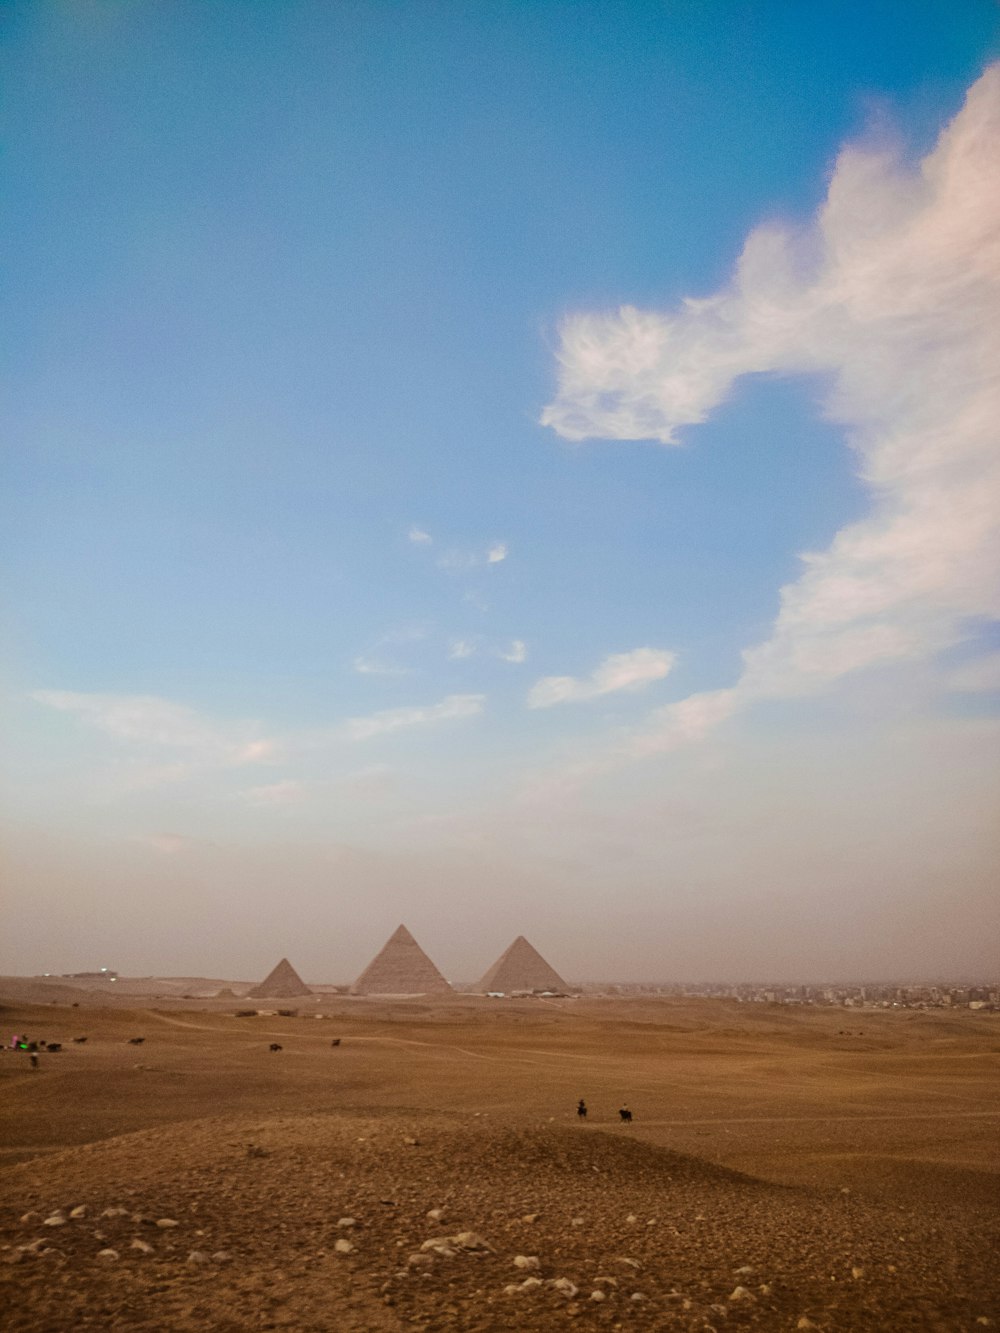 Un grupo de pirámides en un desierto